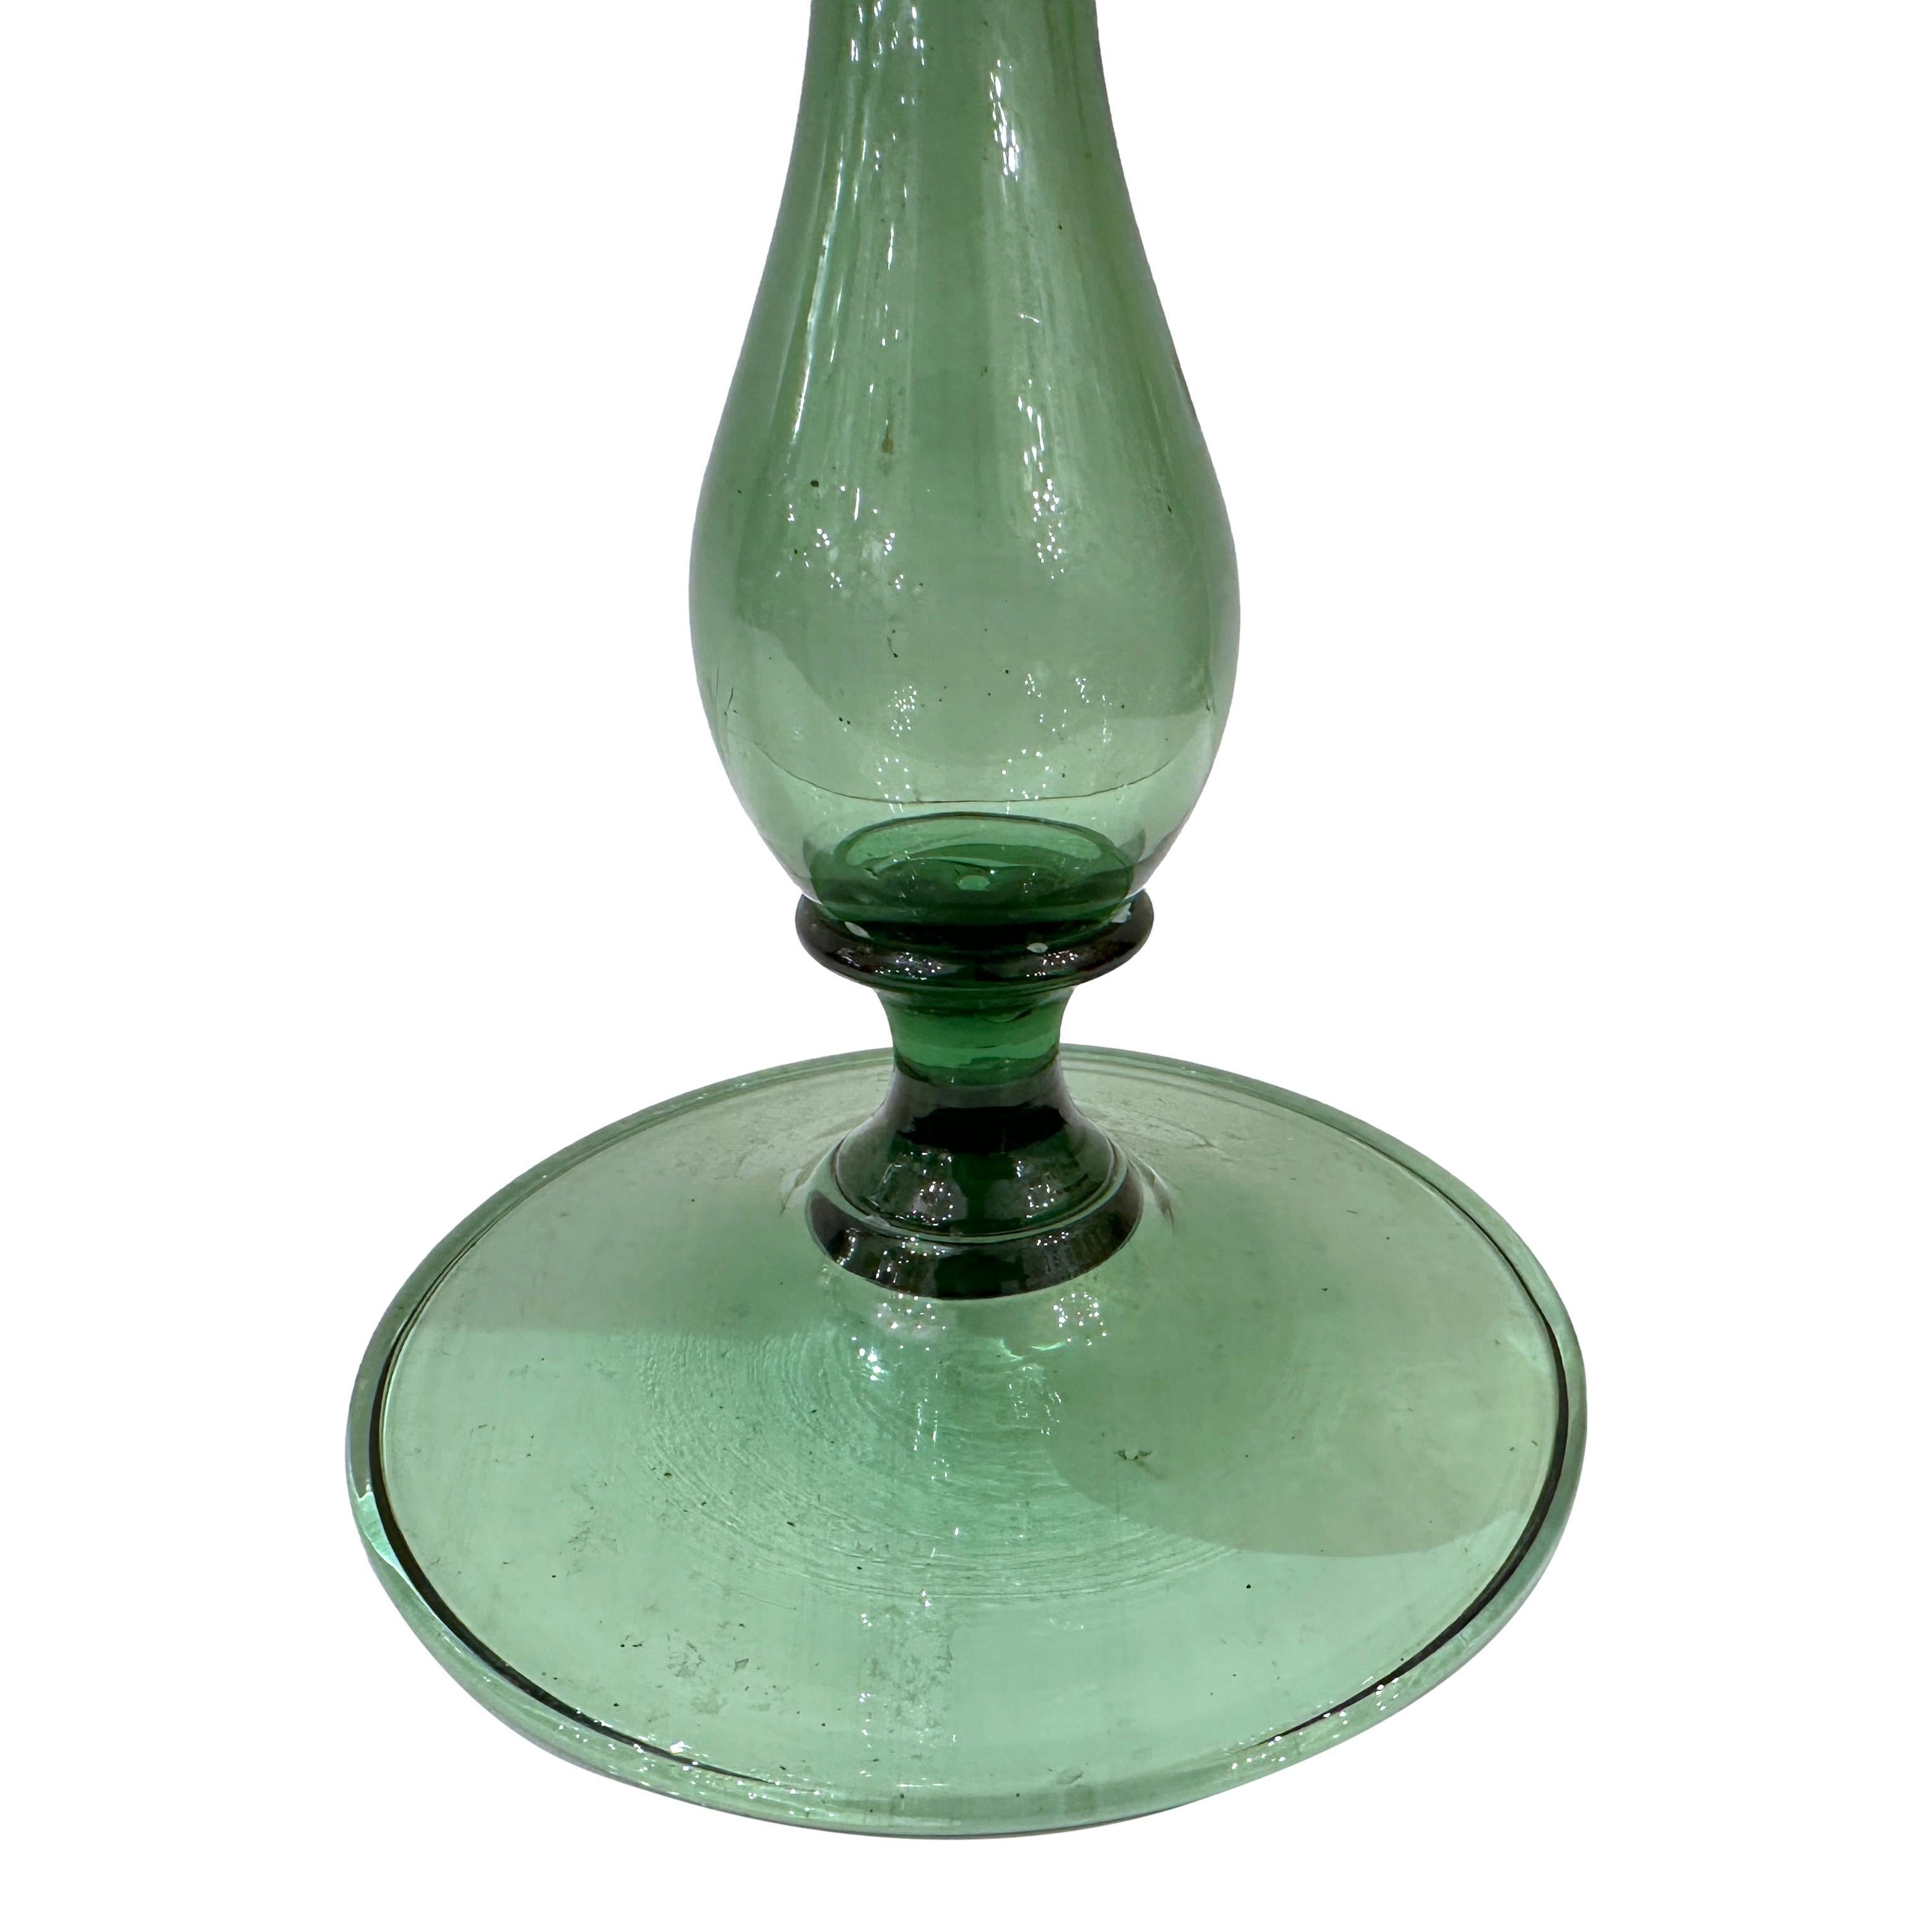 Ein italienischer Kerzenständer aus geblasenem Murano-Glas aus den 1950er Jahren.

Abmessungen:
Höhe: 14